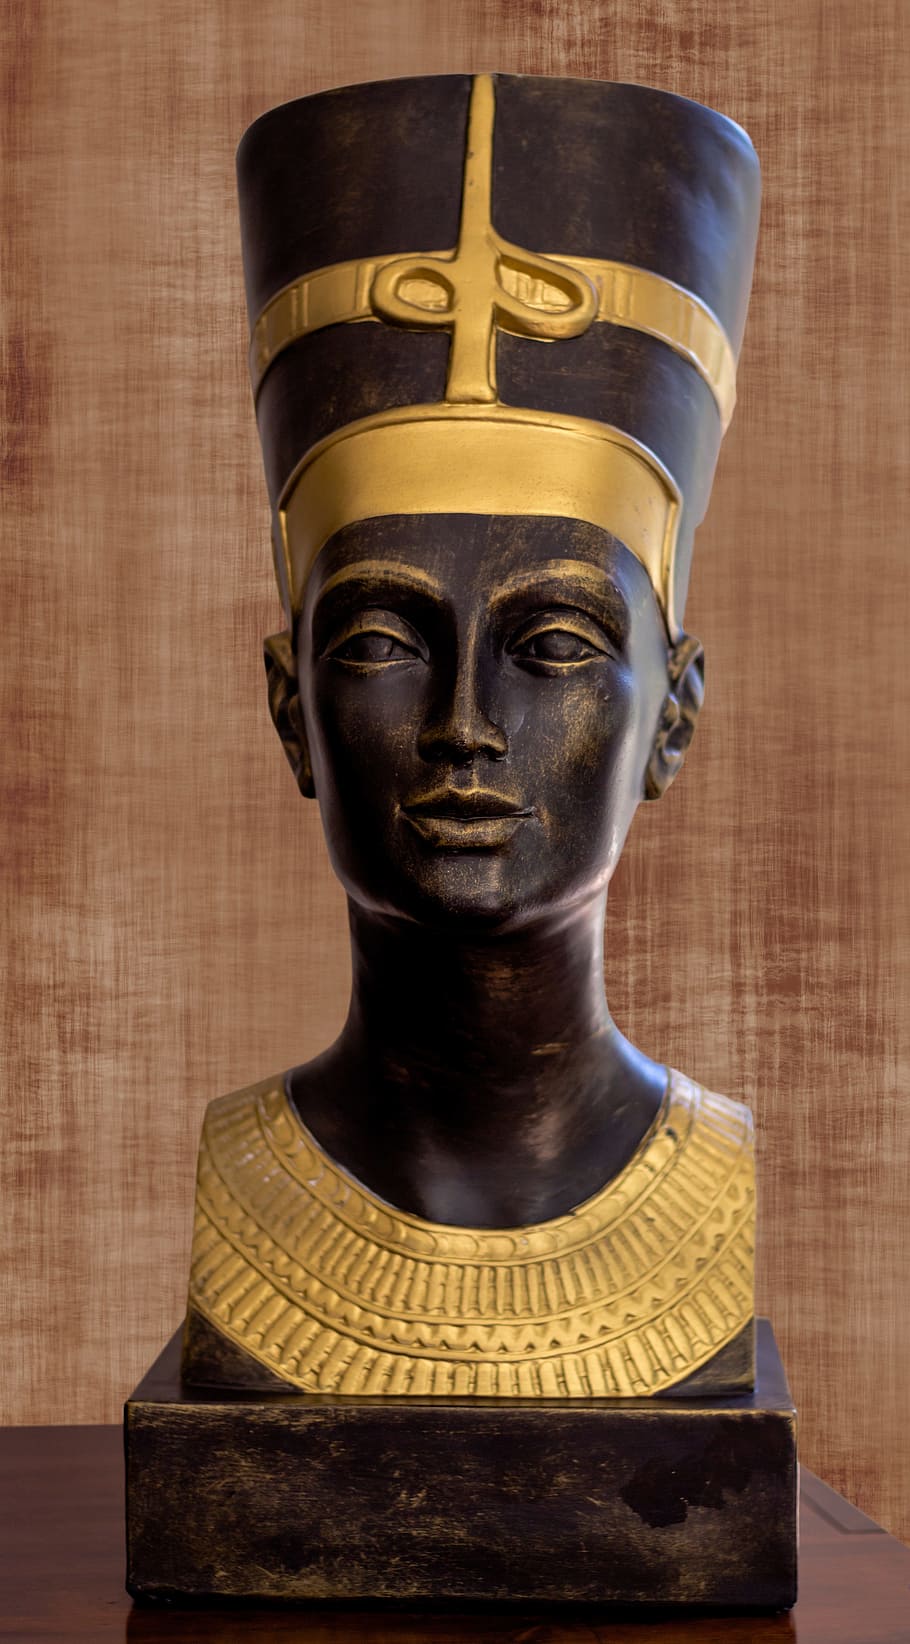 Egito, Nefertiti, Figura, Escultura, estátua, ouro, cor dourada, história, vista frontal, representação humana